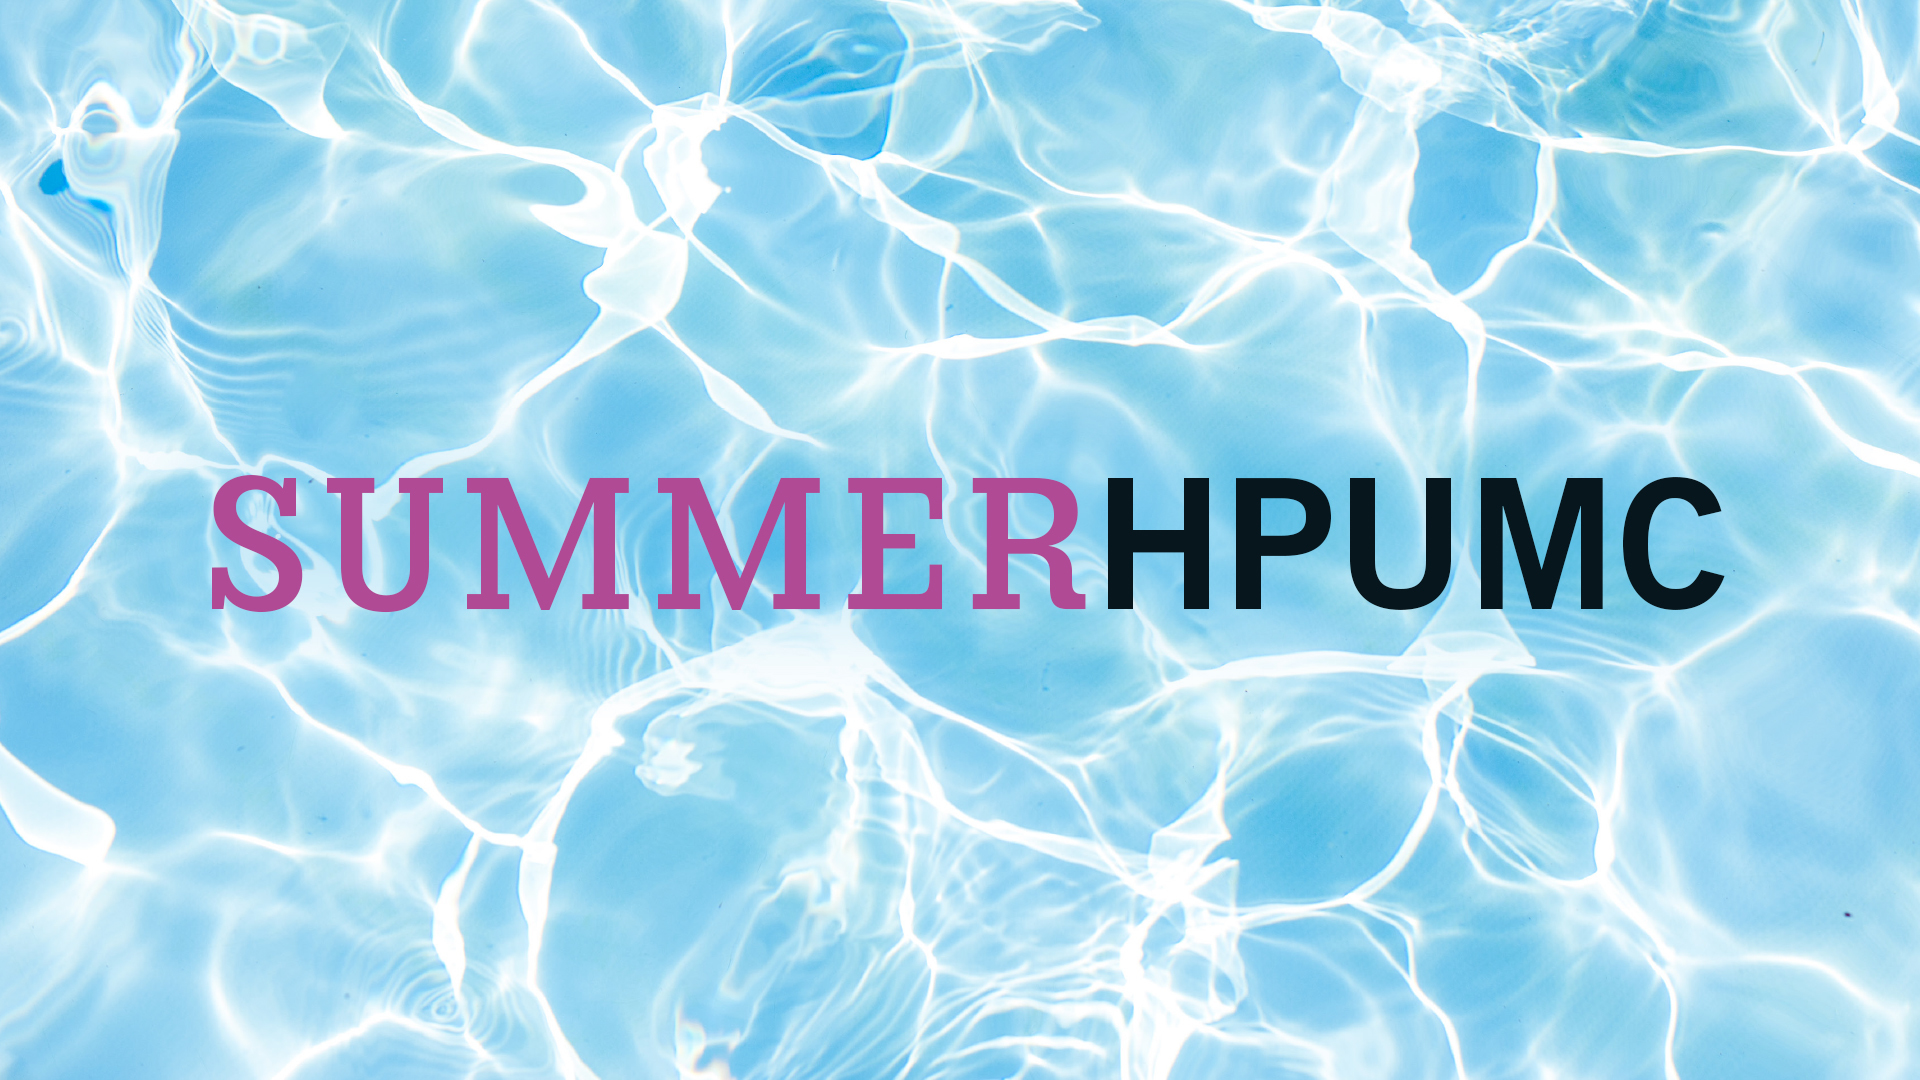 Summer at HPUMC